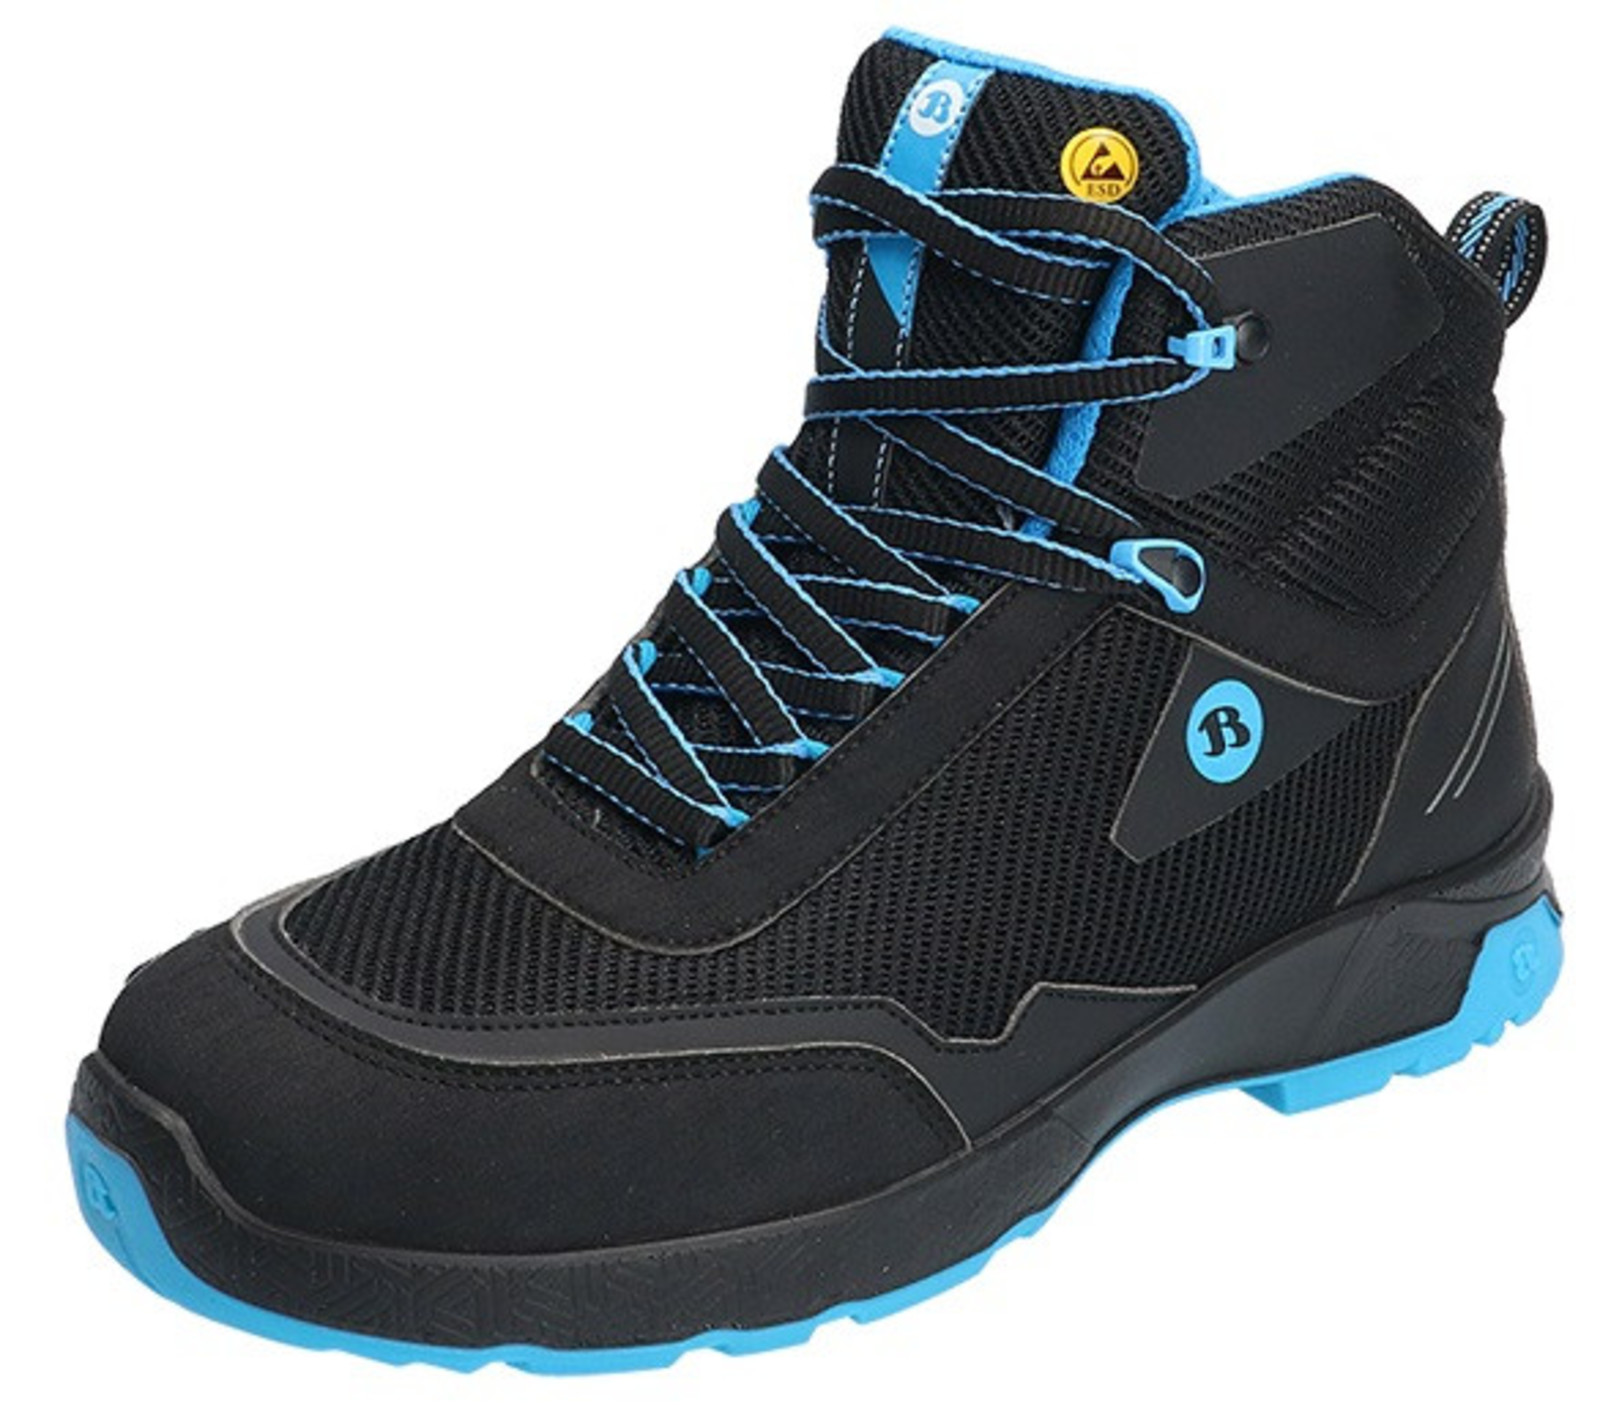 Bezpečnostná členková obuv Baťa Summ One S3 ESD - veľkosť: 43, farba: čierna